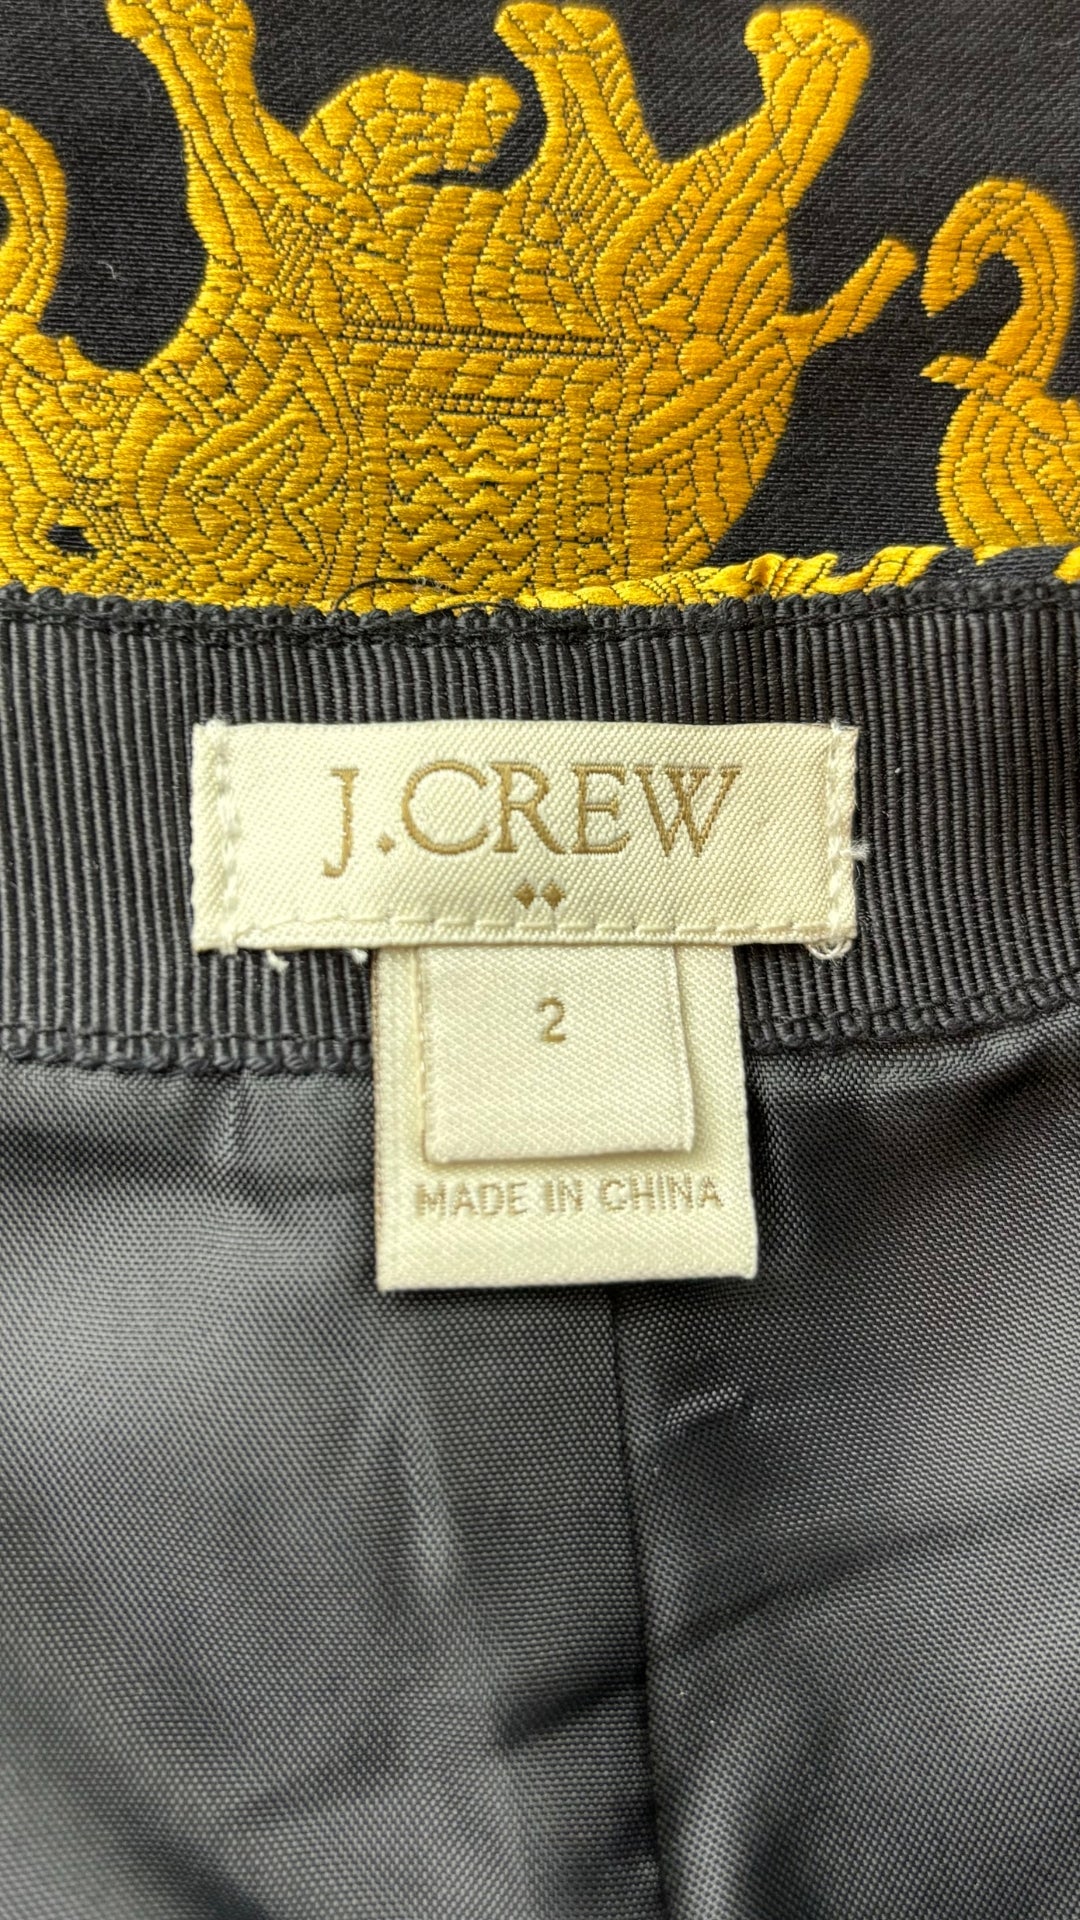 Jupe courte éléphants J. Crew, taille 2. Vue de l'étiquette de marque et taille.